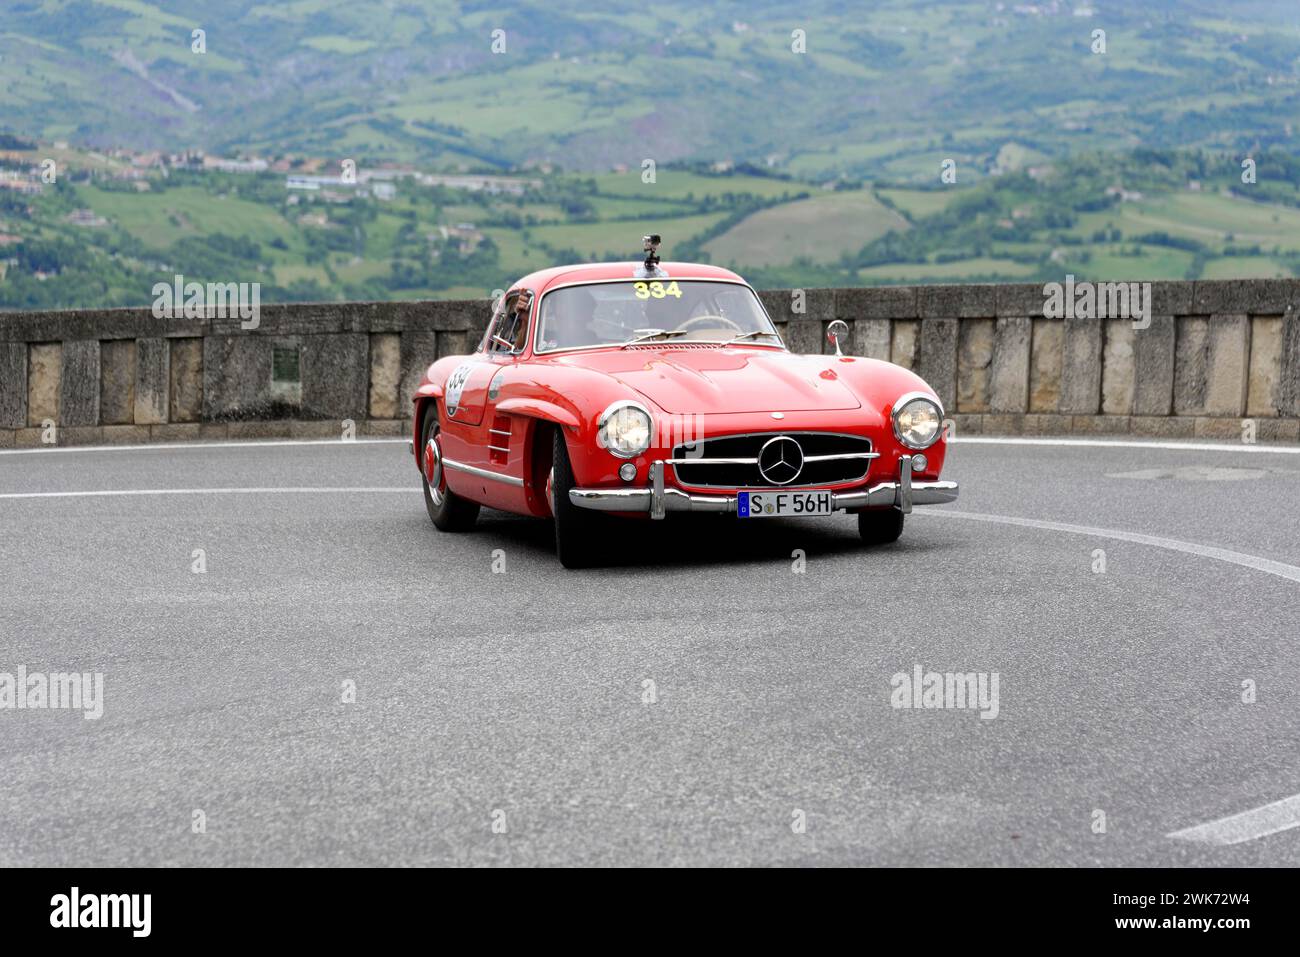 Mille Miglia 2014 ou 1000 Miglia, No. 334, Mercedes-Benz 300 SL W 198, construit en 1955 Vintage car race, Saint-Marin, Italie Banque D'Images